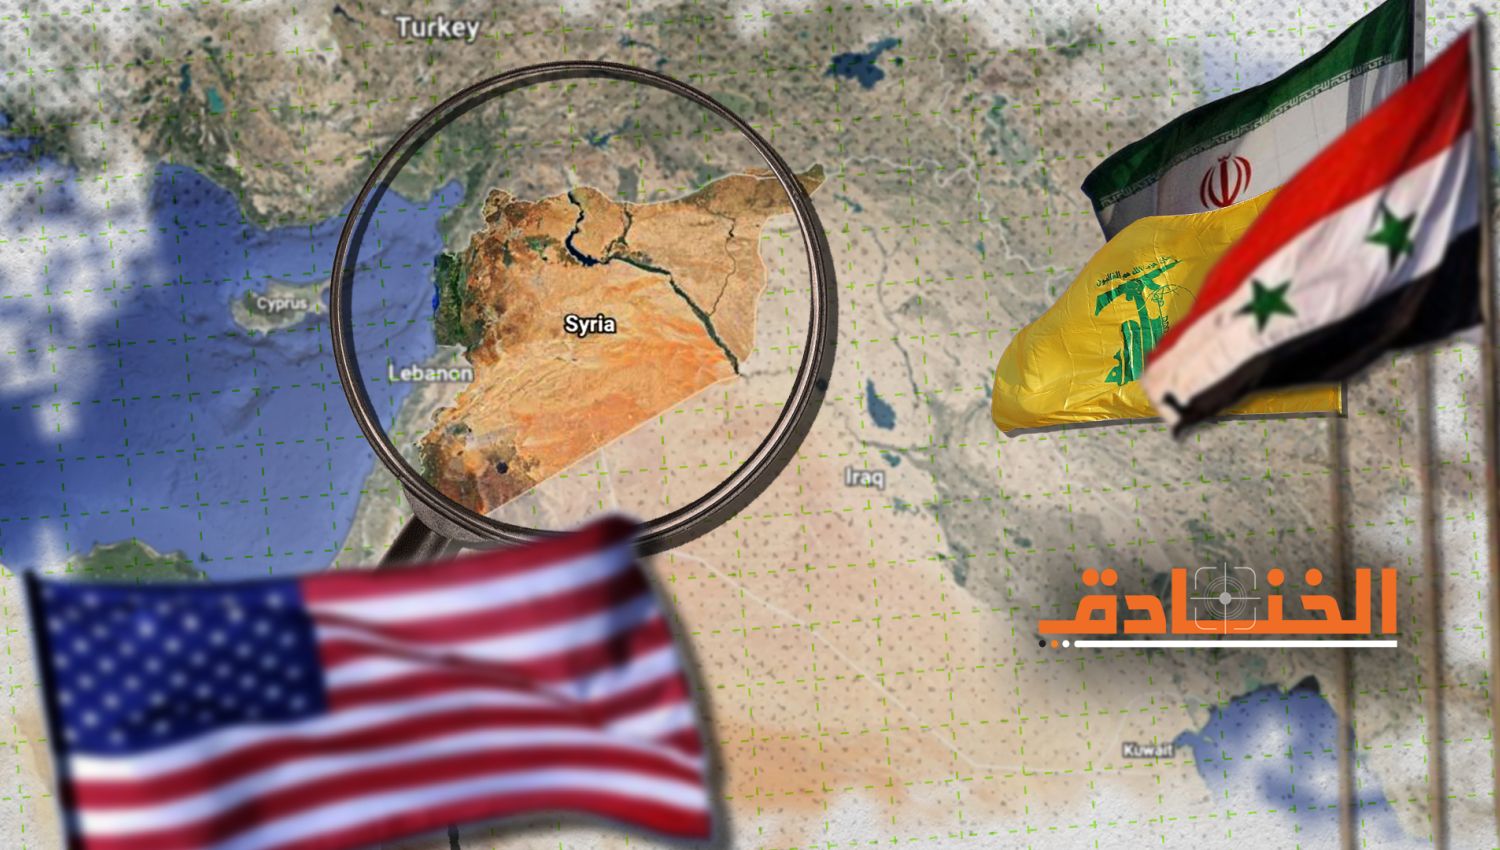  بعد ضربة "التنف" واشنطن تنتقل في سوريا الى "الحرب الناعمة"